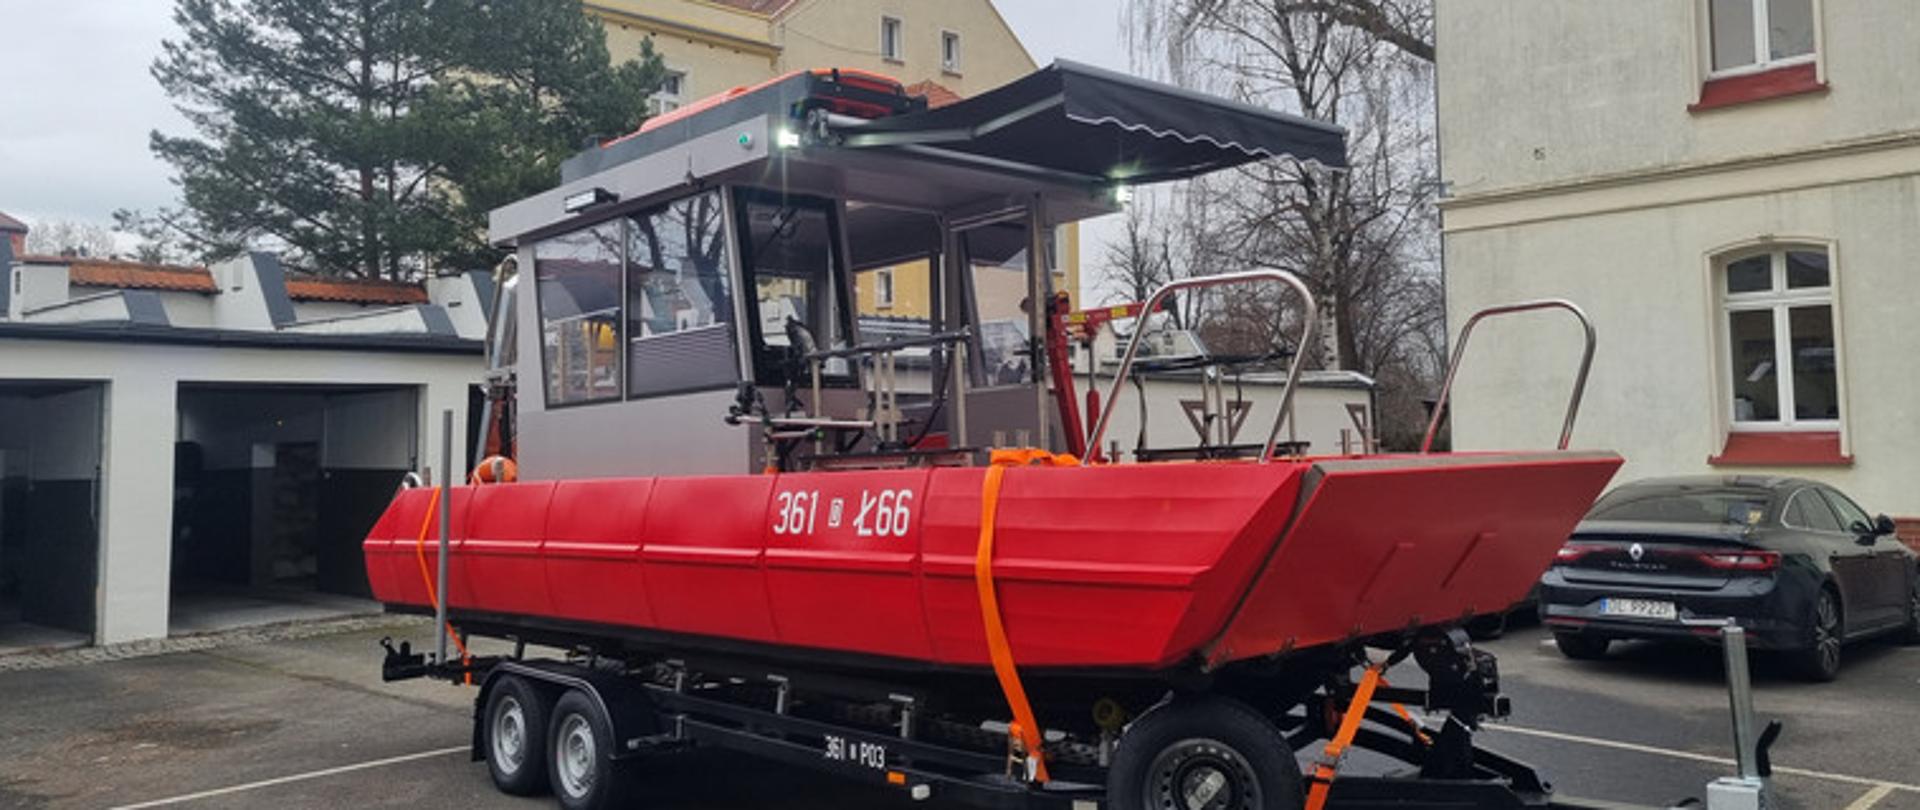 Nowa łódź na stanie Jednostki Ratowniczo-Gaśniczej nr 1 w Legnicy